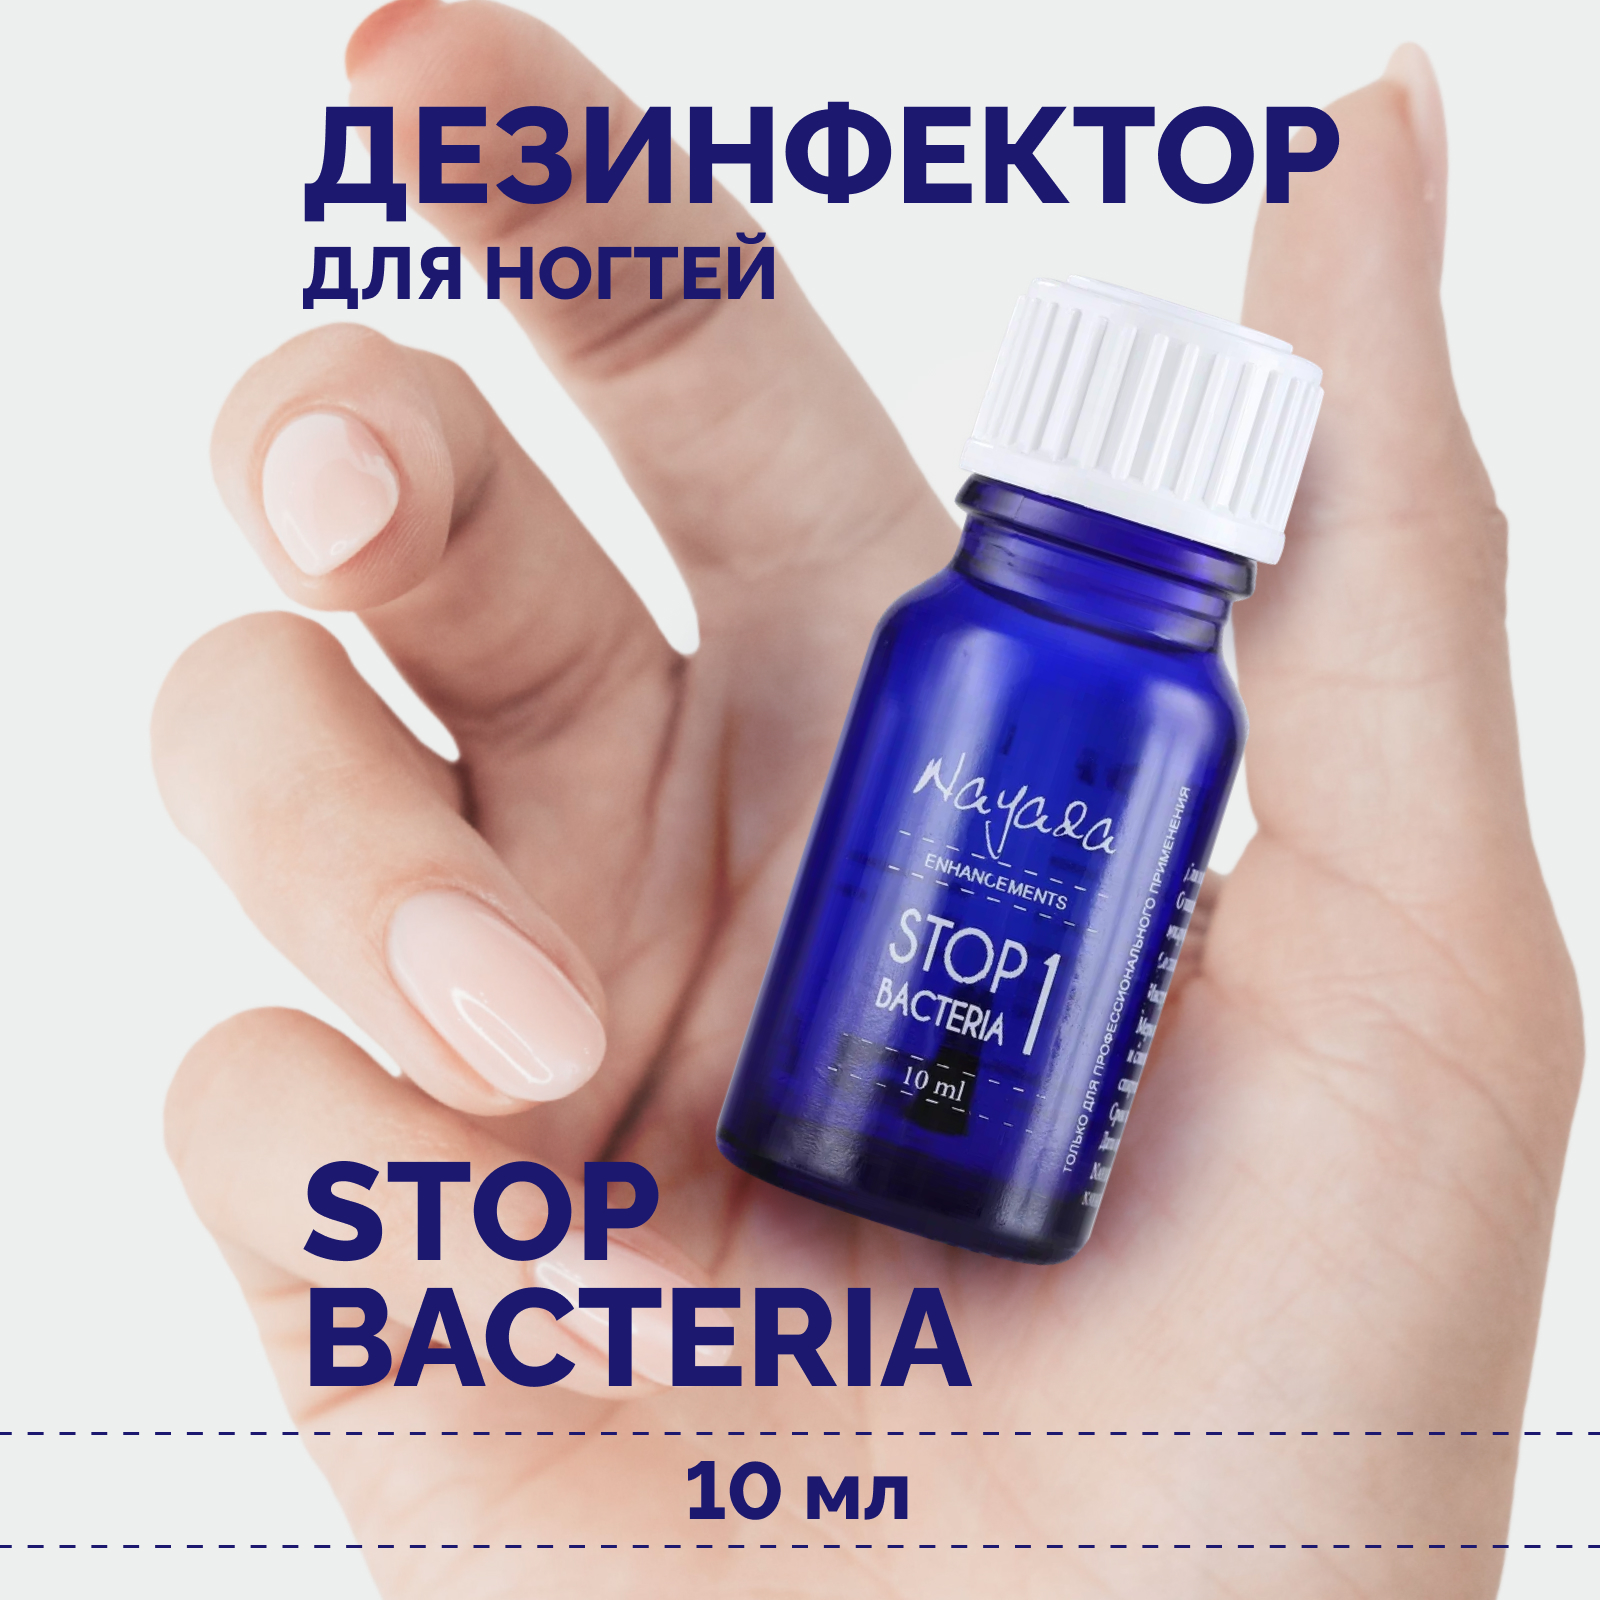 Дезинфектор для ногтей Nayada Стоп бактерия профилактика грибка и бактерий, 10 мл дезинфецирующее средство для рук saraya alsoft r plus 30 мл